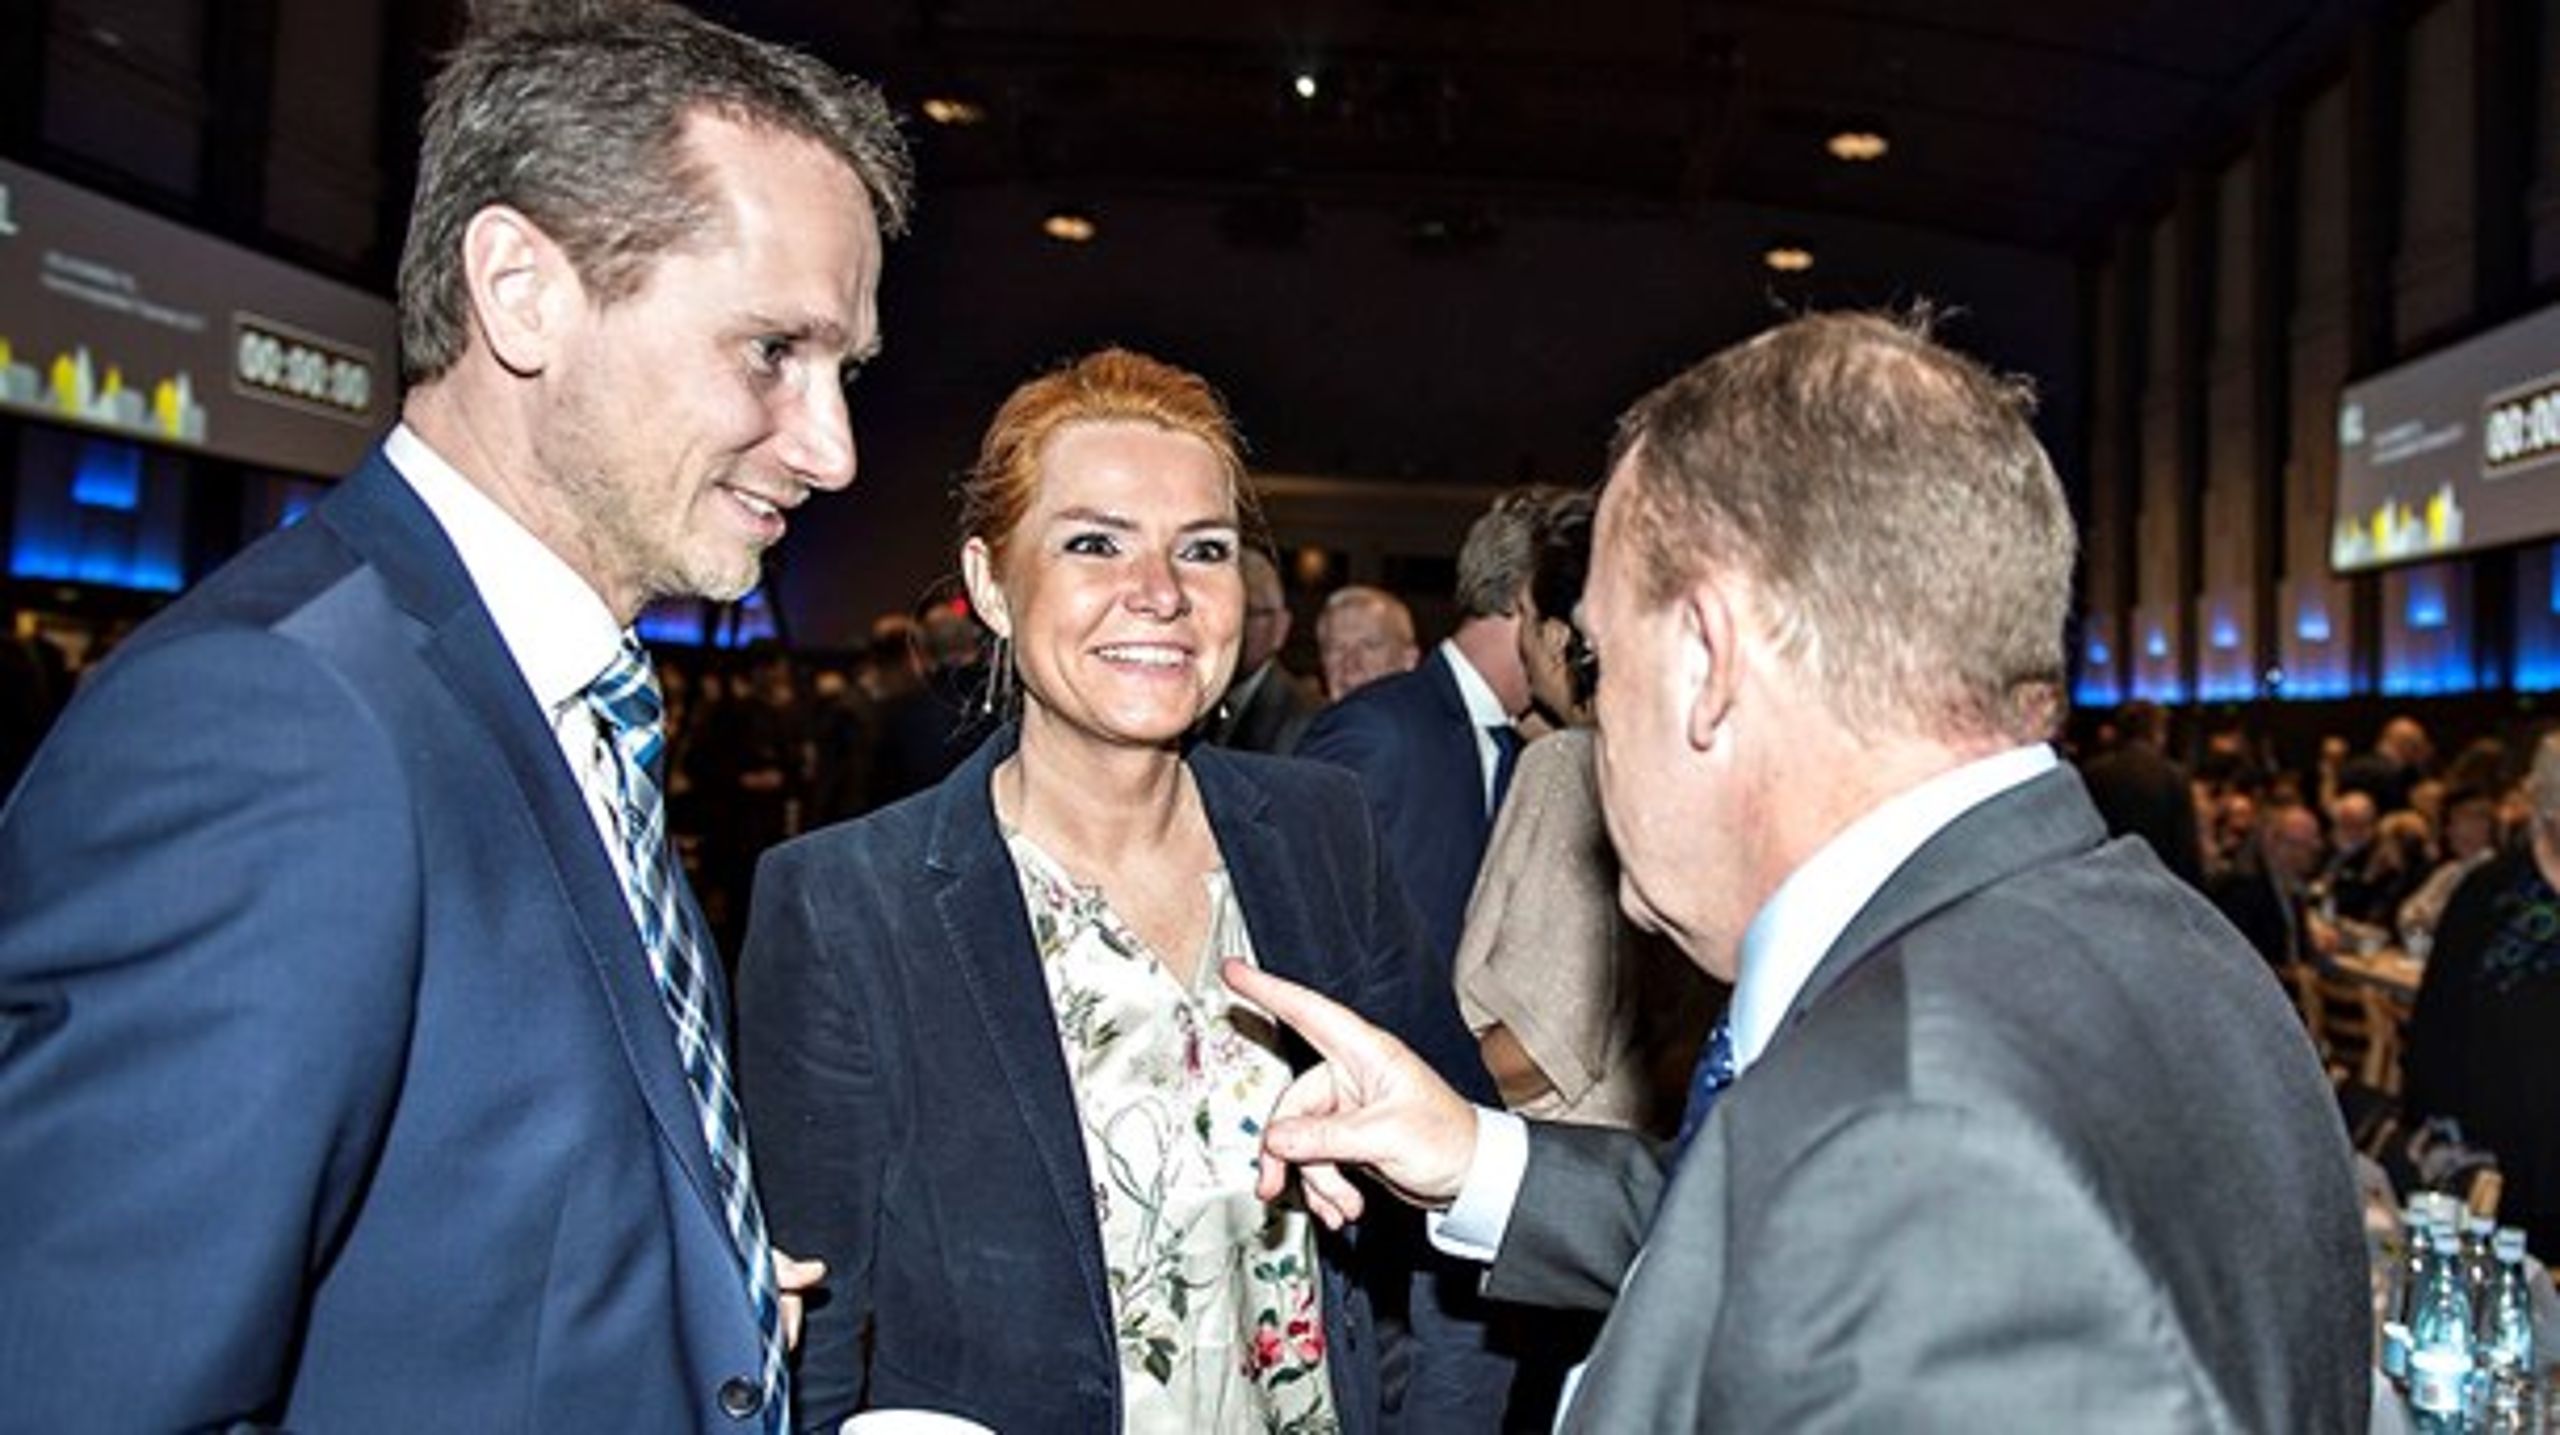 Lars Løkke Rasmussen og Kristian Jensen er ikke altid lige begejstrede for Inger Støjbergs stunts, men så længe vælgerne er med hende, har hun meget lang snor, vurderer Erik Holstein.